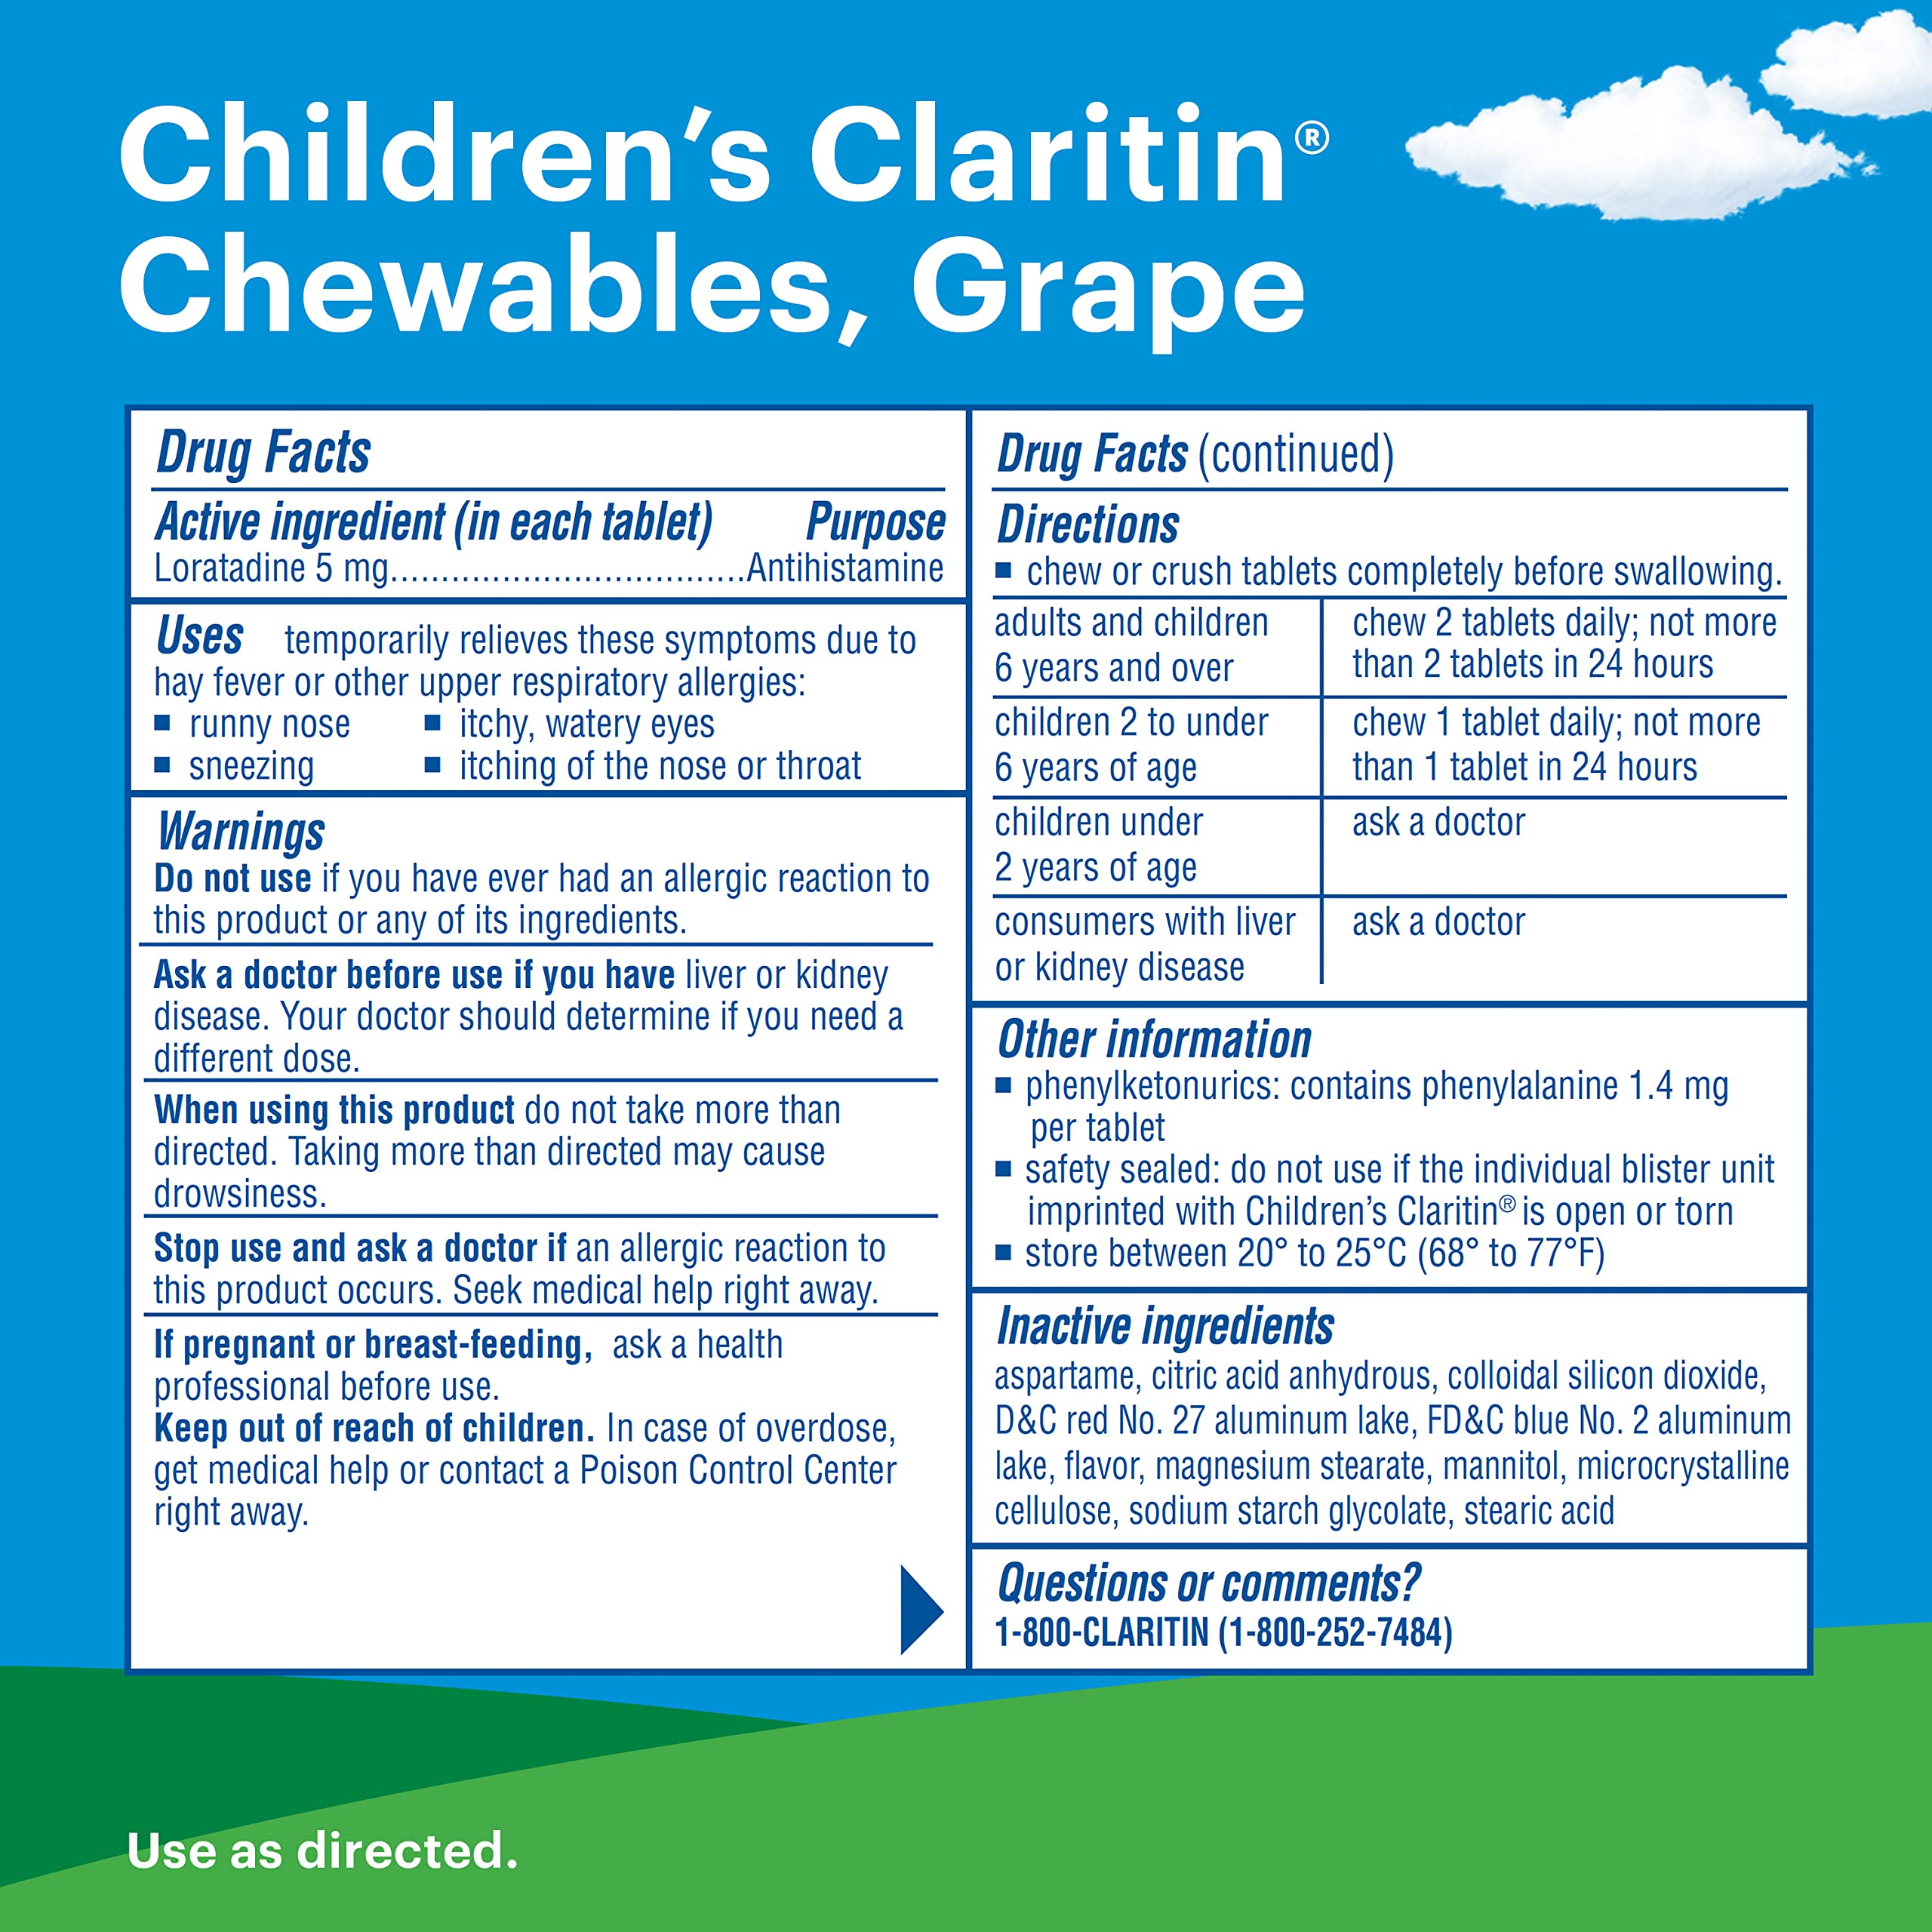 Claritin Children's Chewables 24 HR Children Allergy Medicine, Grape, 30 Count (Pack of 2)